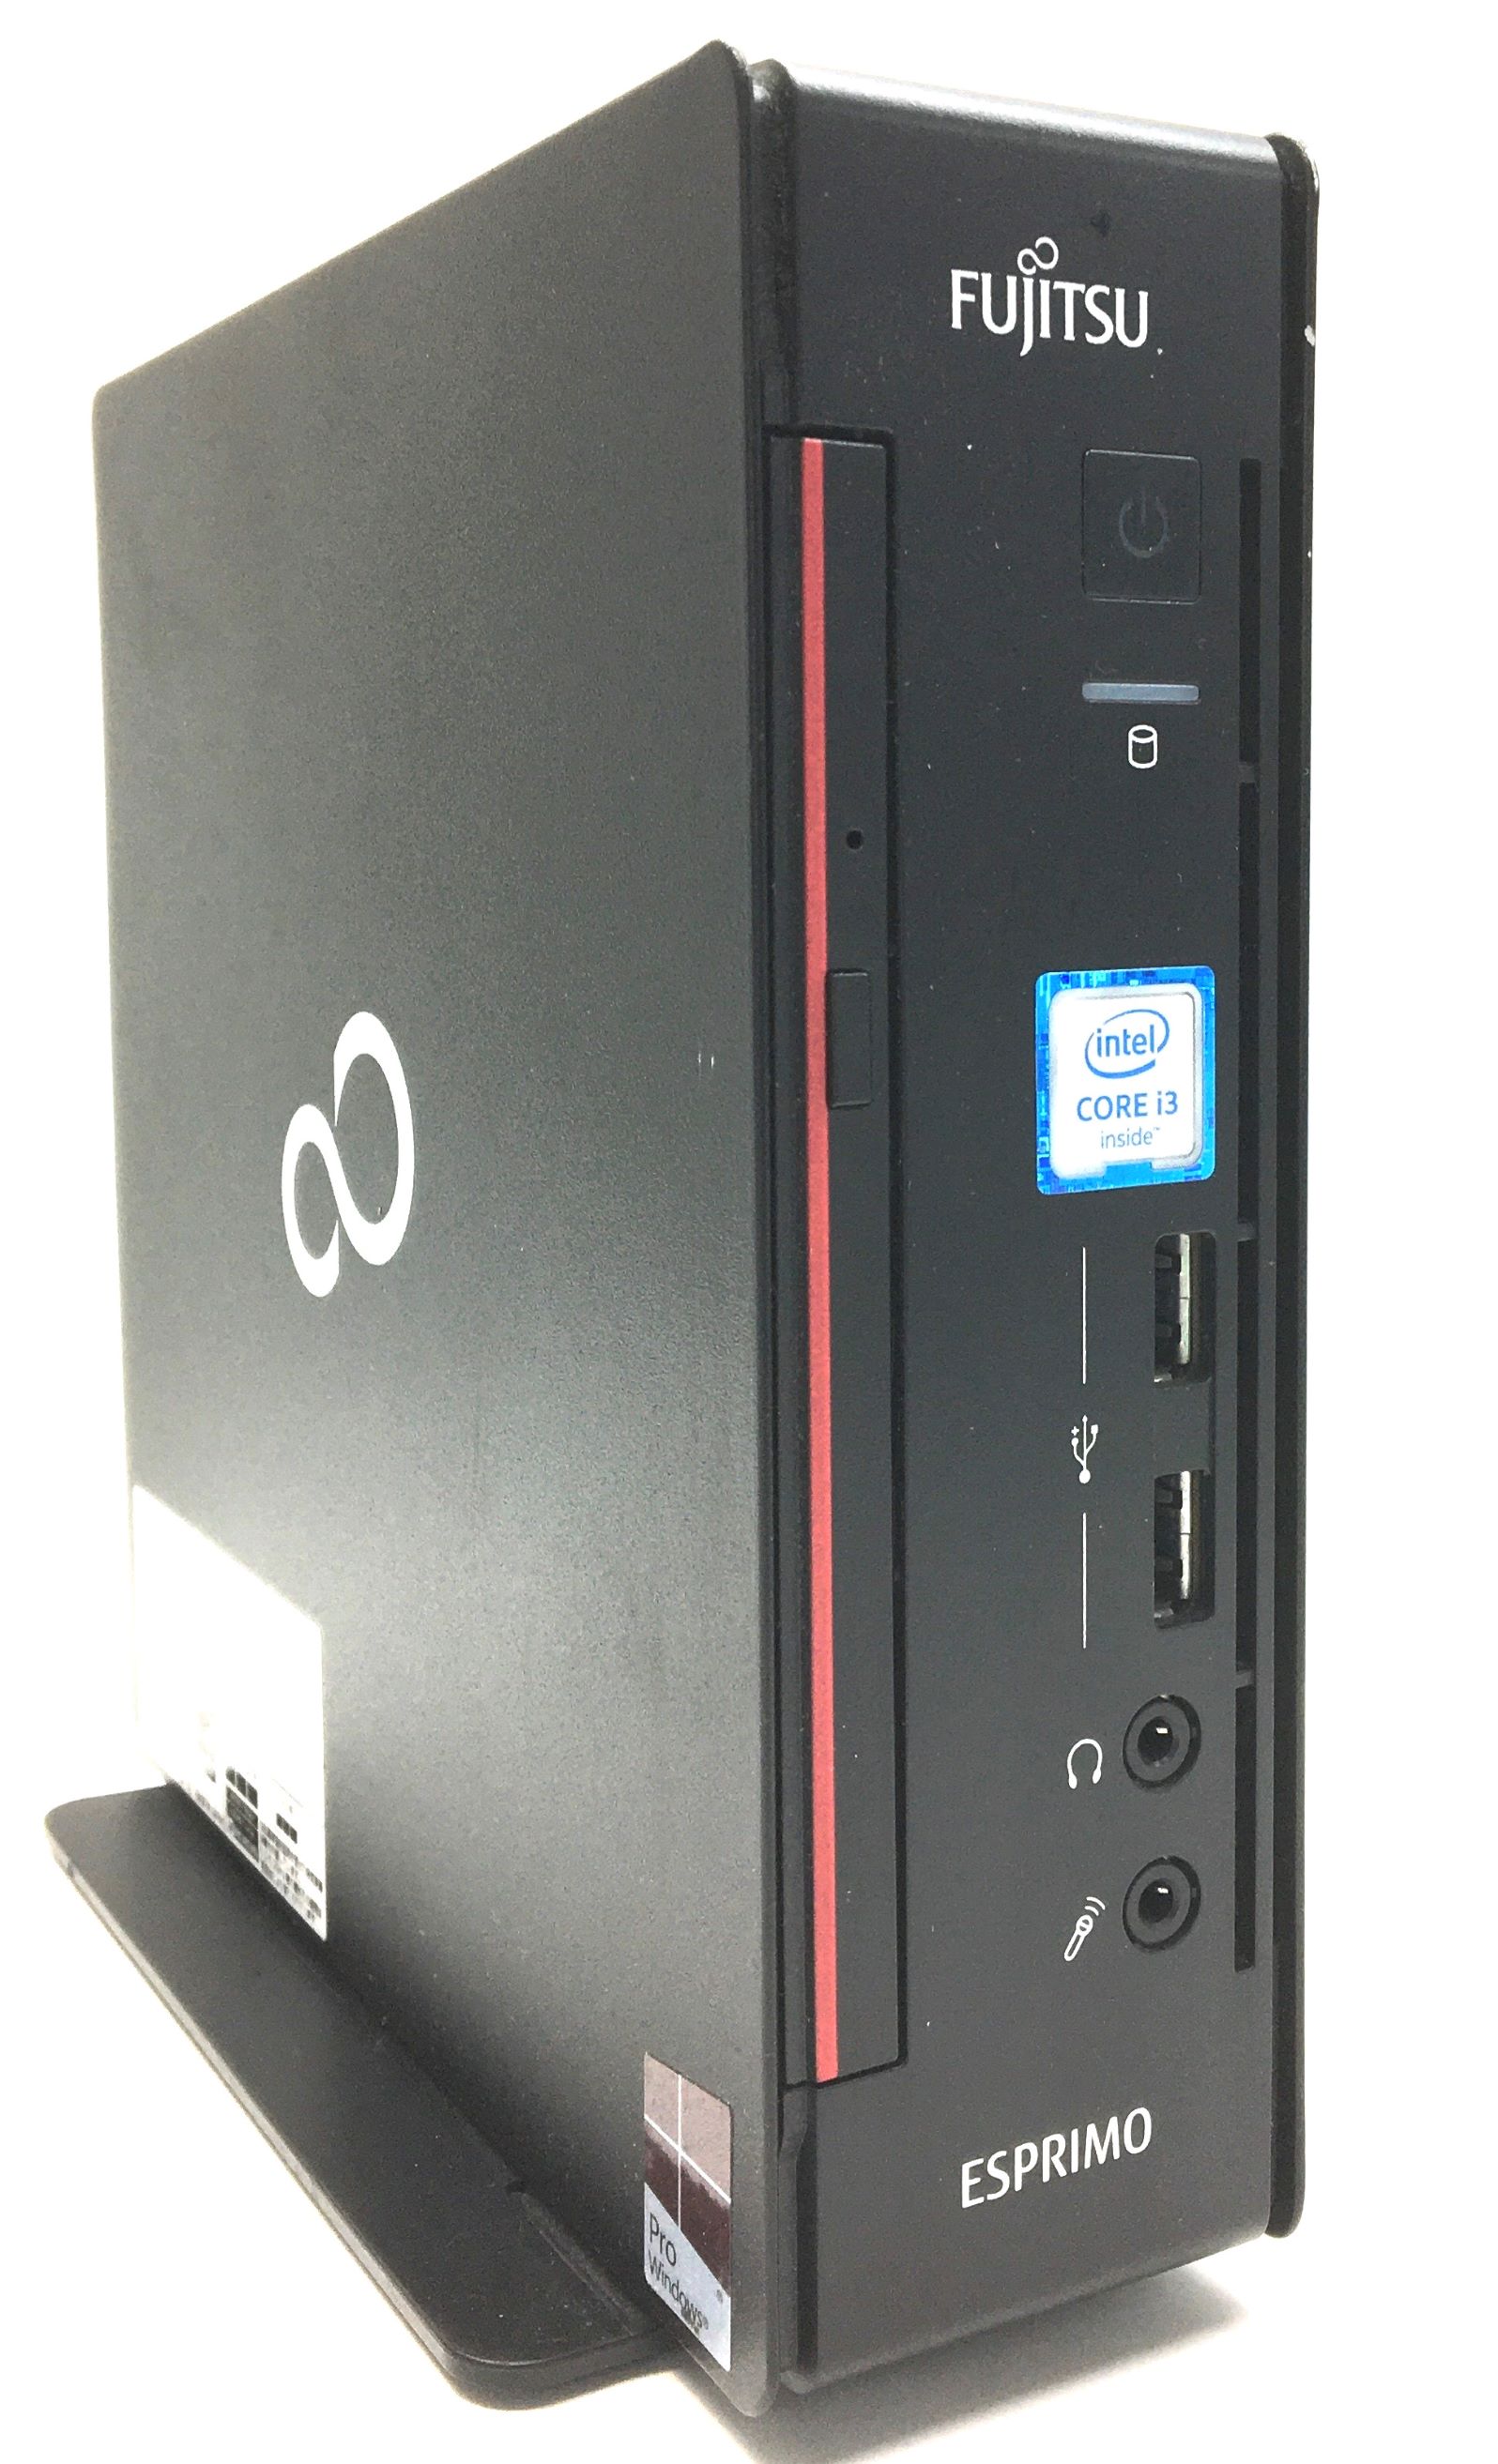 スペシャルオファ 富士通 ESPRIMO Q556 P 新品SSD Windows10 3年保証